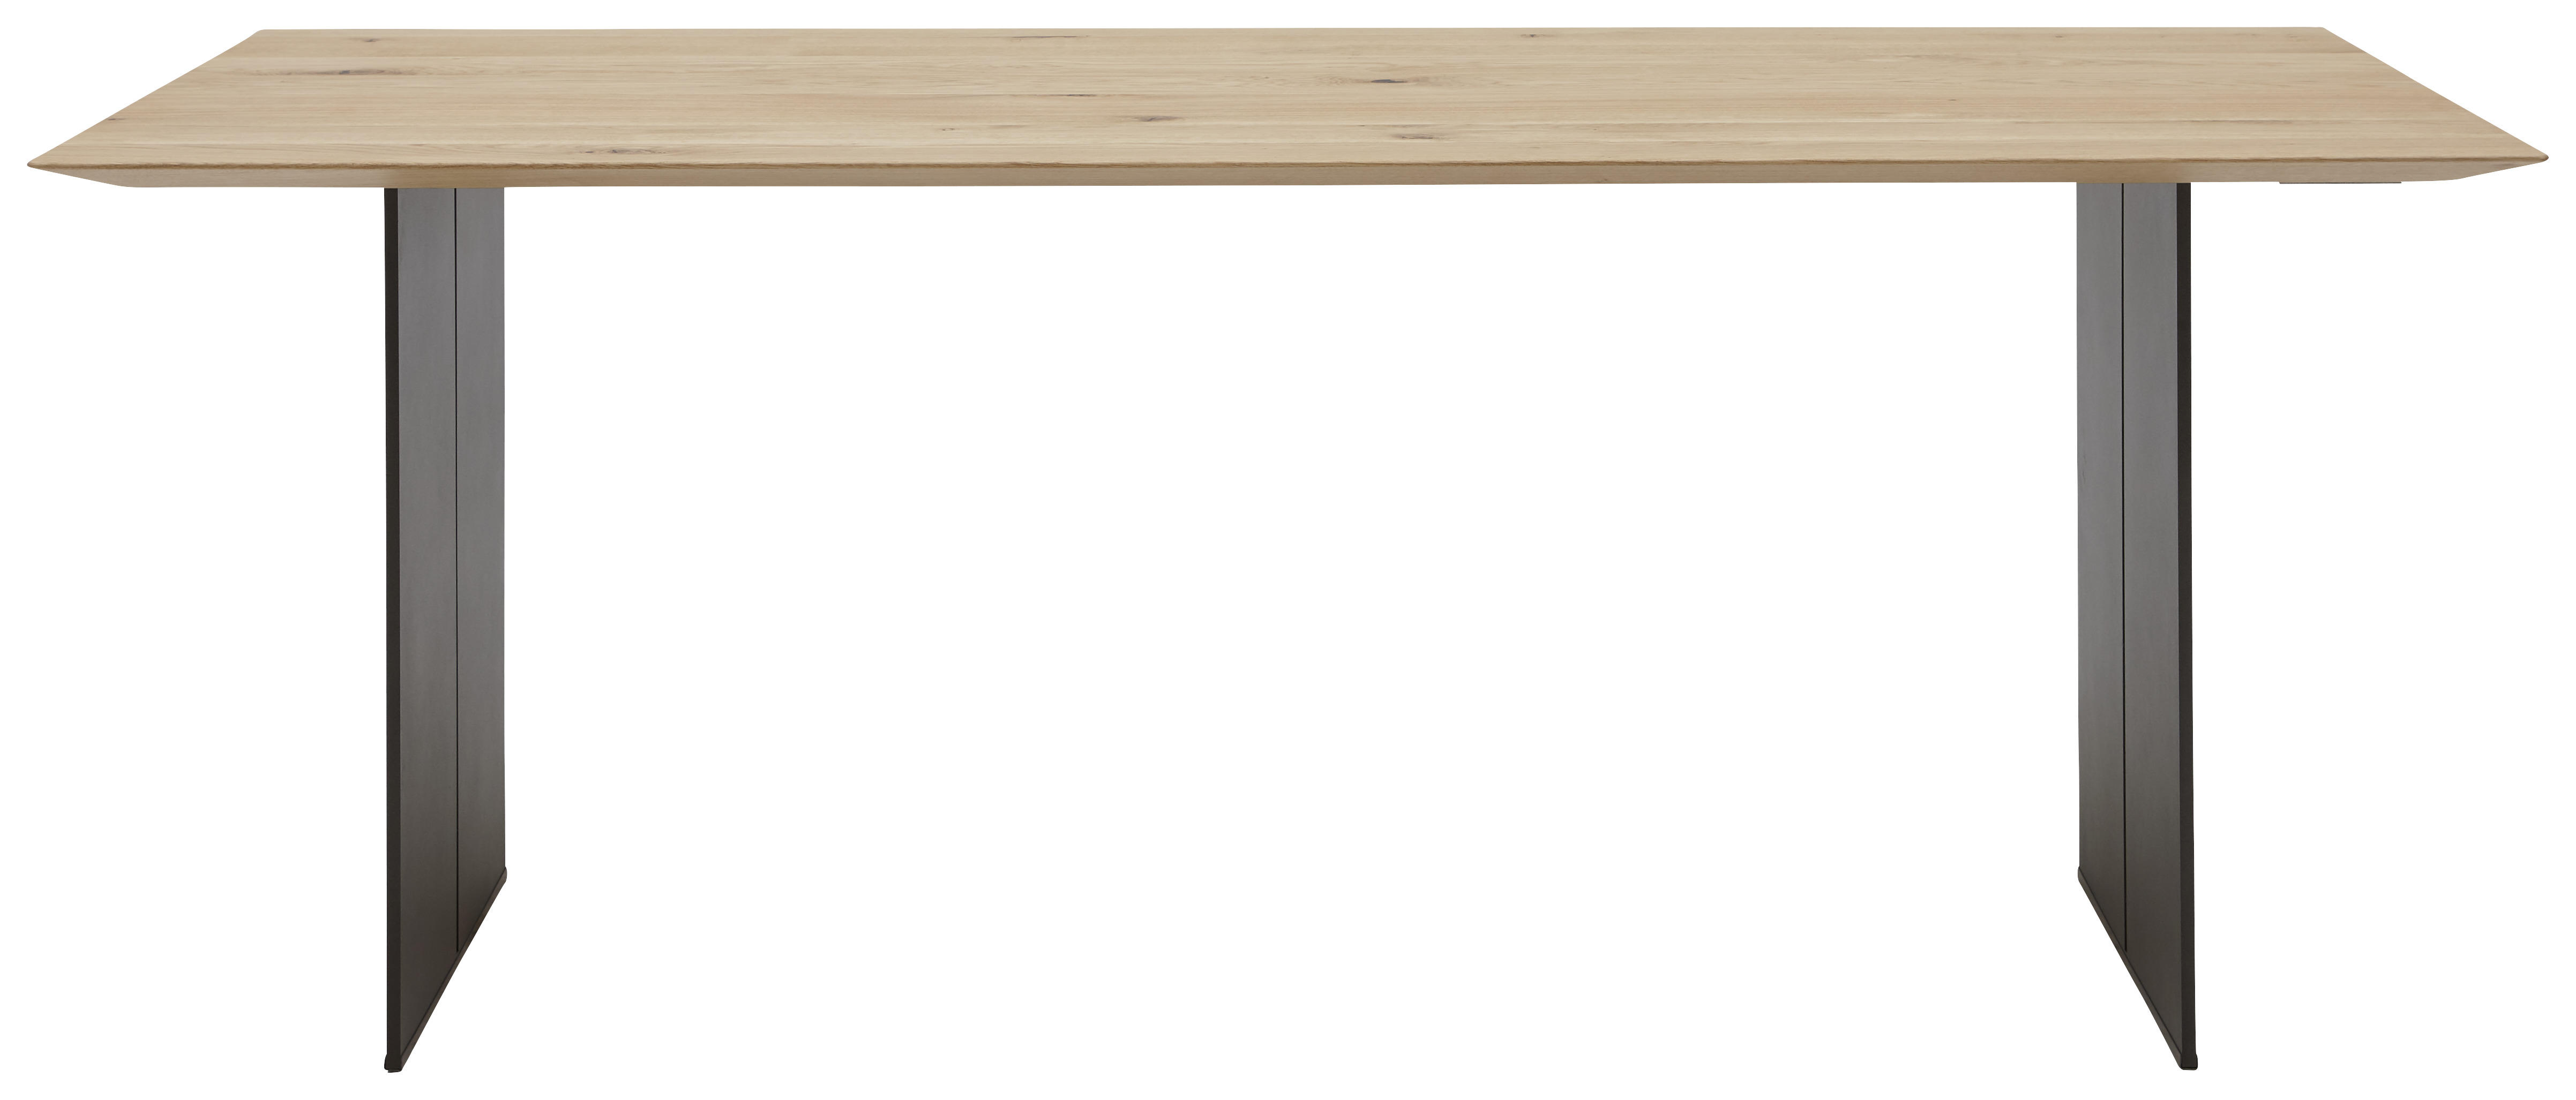 ESSTISCH 200/100/77 cm Asteiche massiv Holz Schwarz, Eichefarben quadratisch  - Eichefarben/Schwarz, Design, Holz/Metall (200/100/77cm) - Dieter Knoll